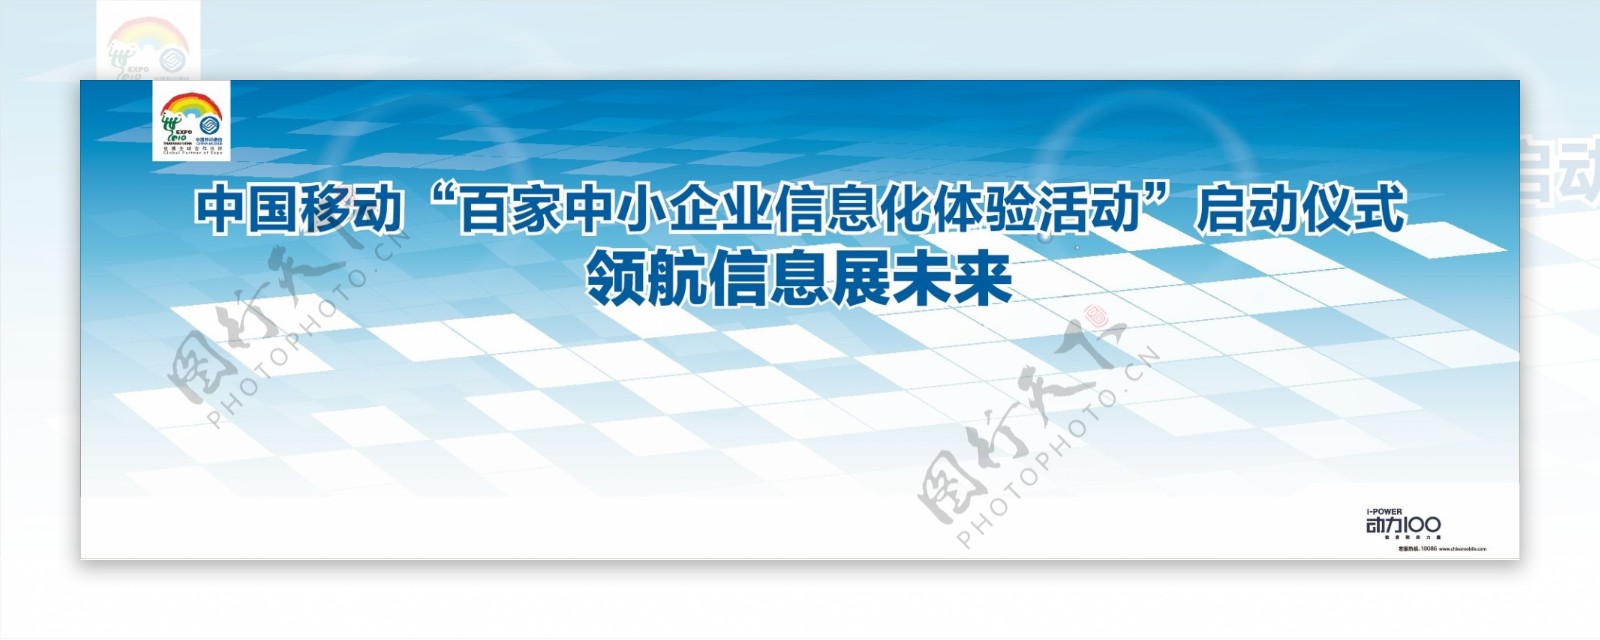 中国移动领航信息主背景板图片